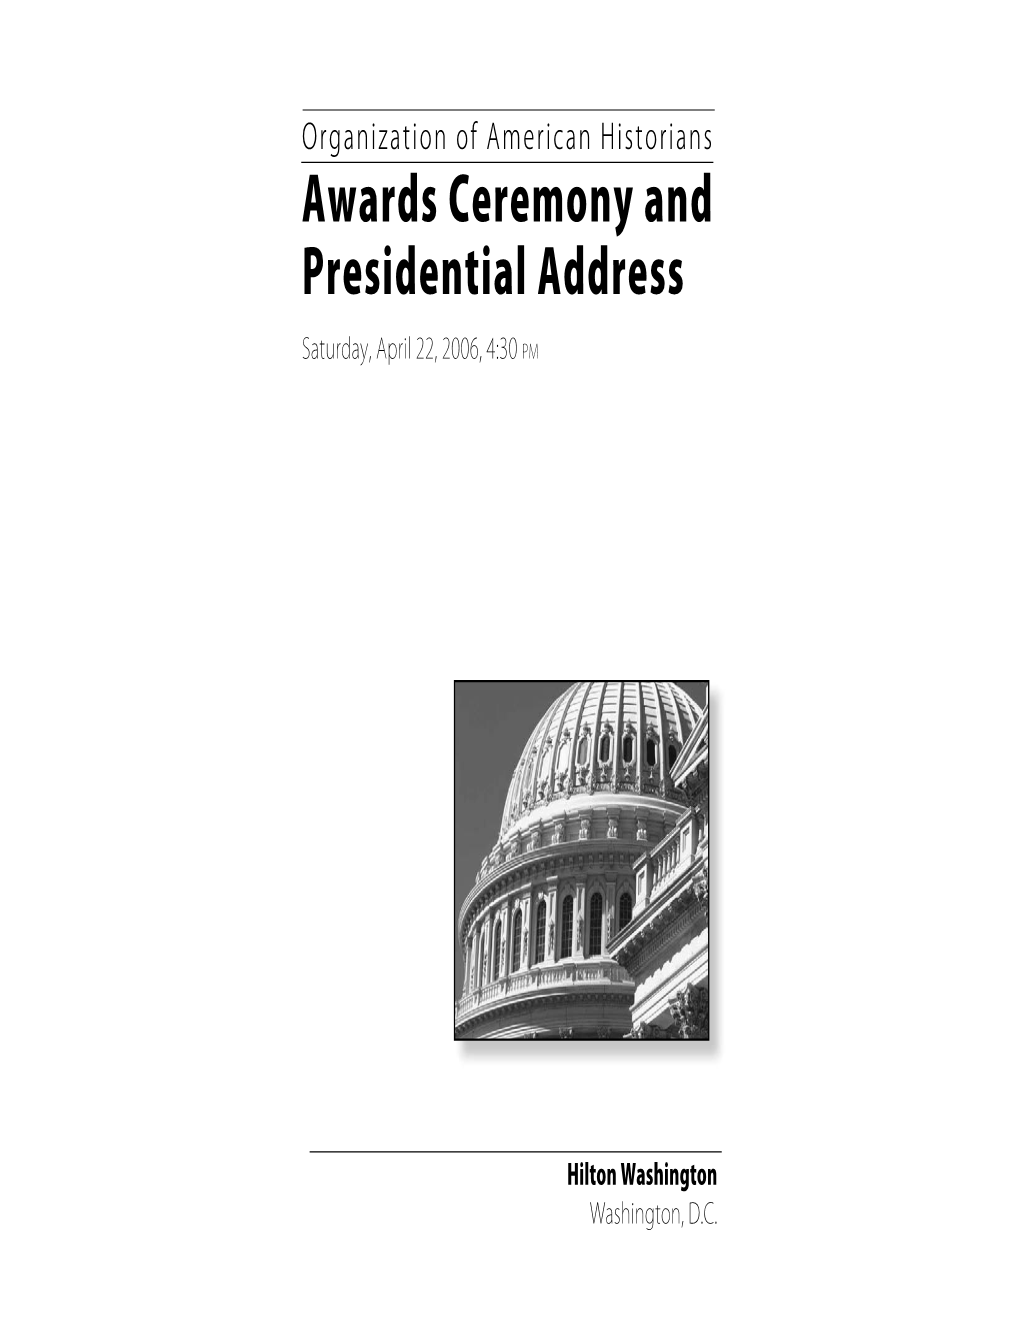 2006 OAH Awards Ceremony Booklet